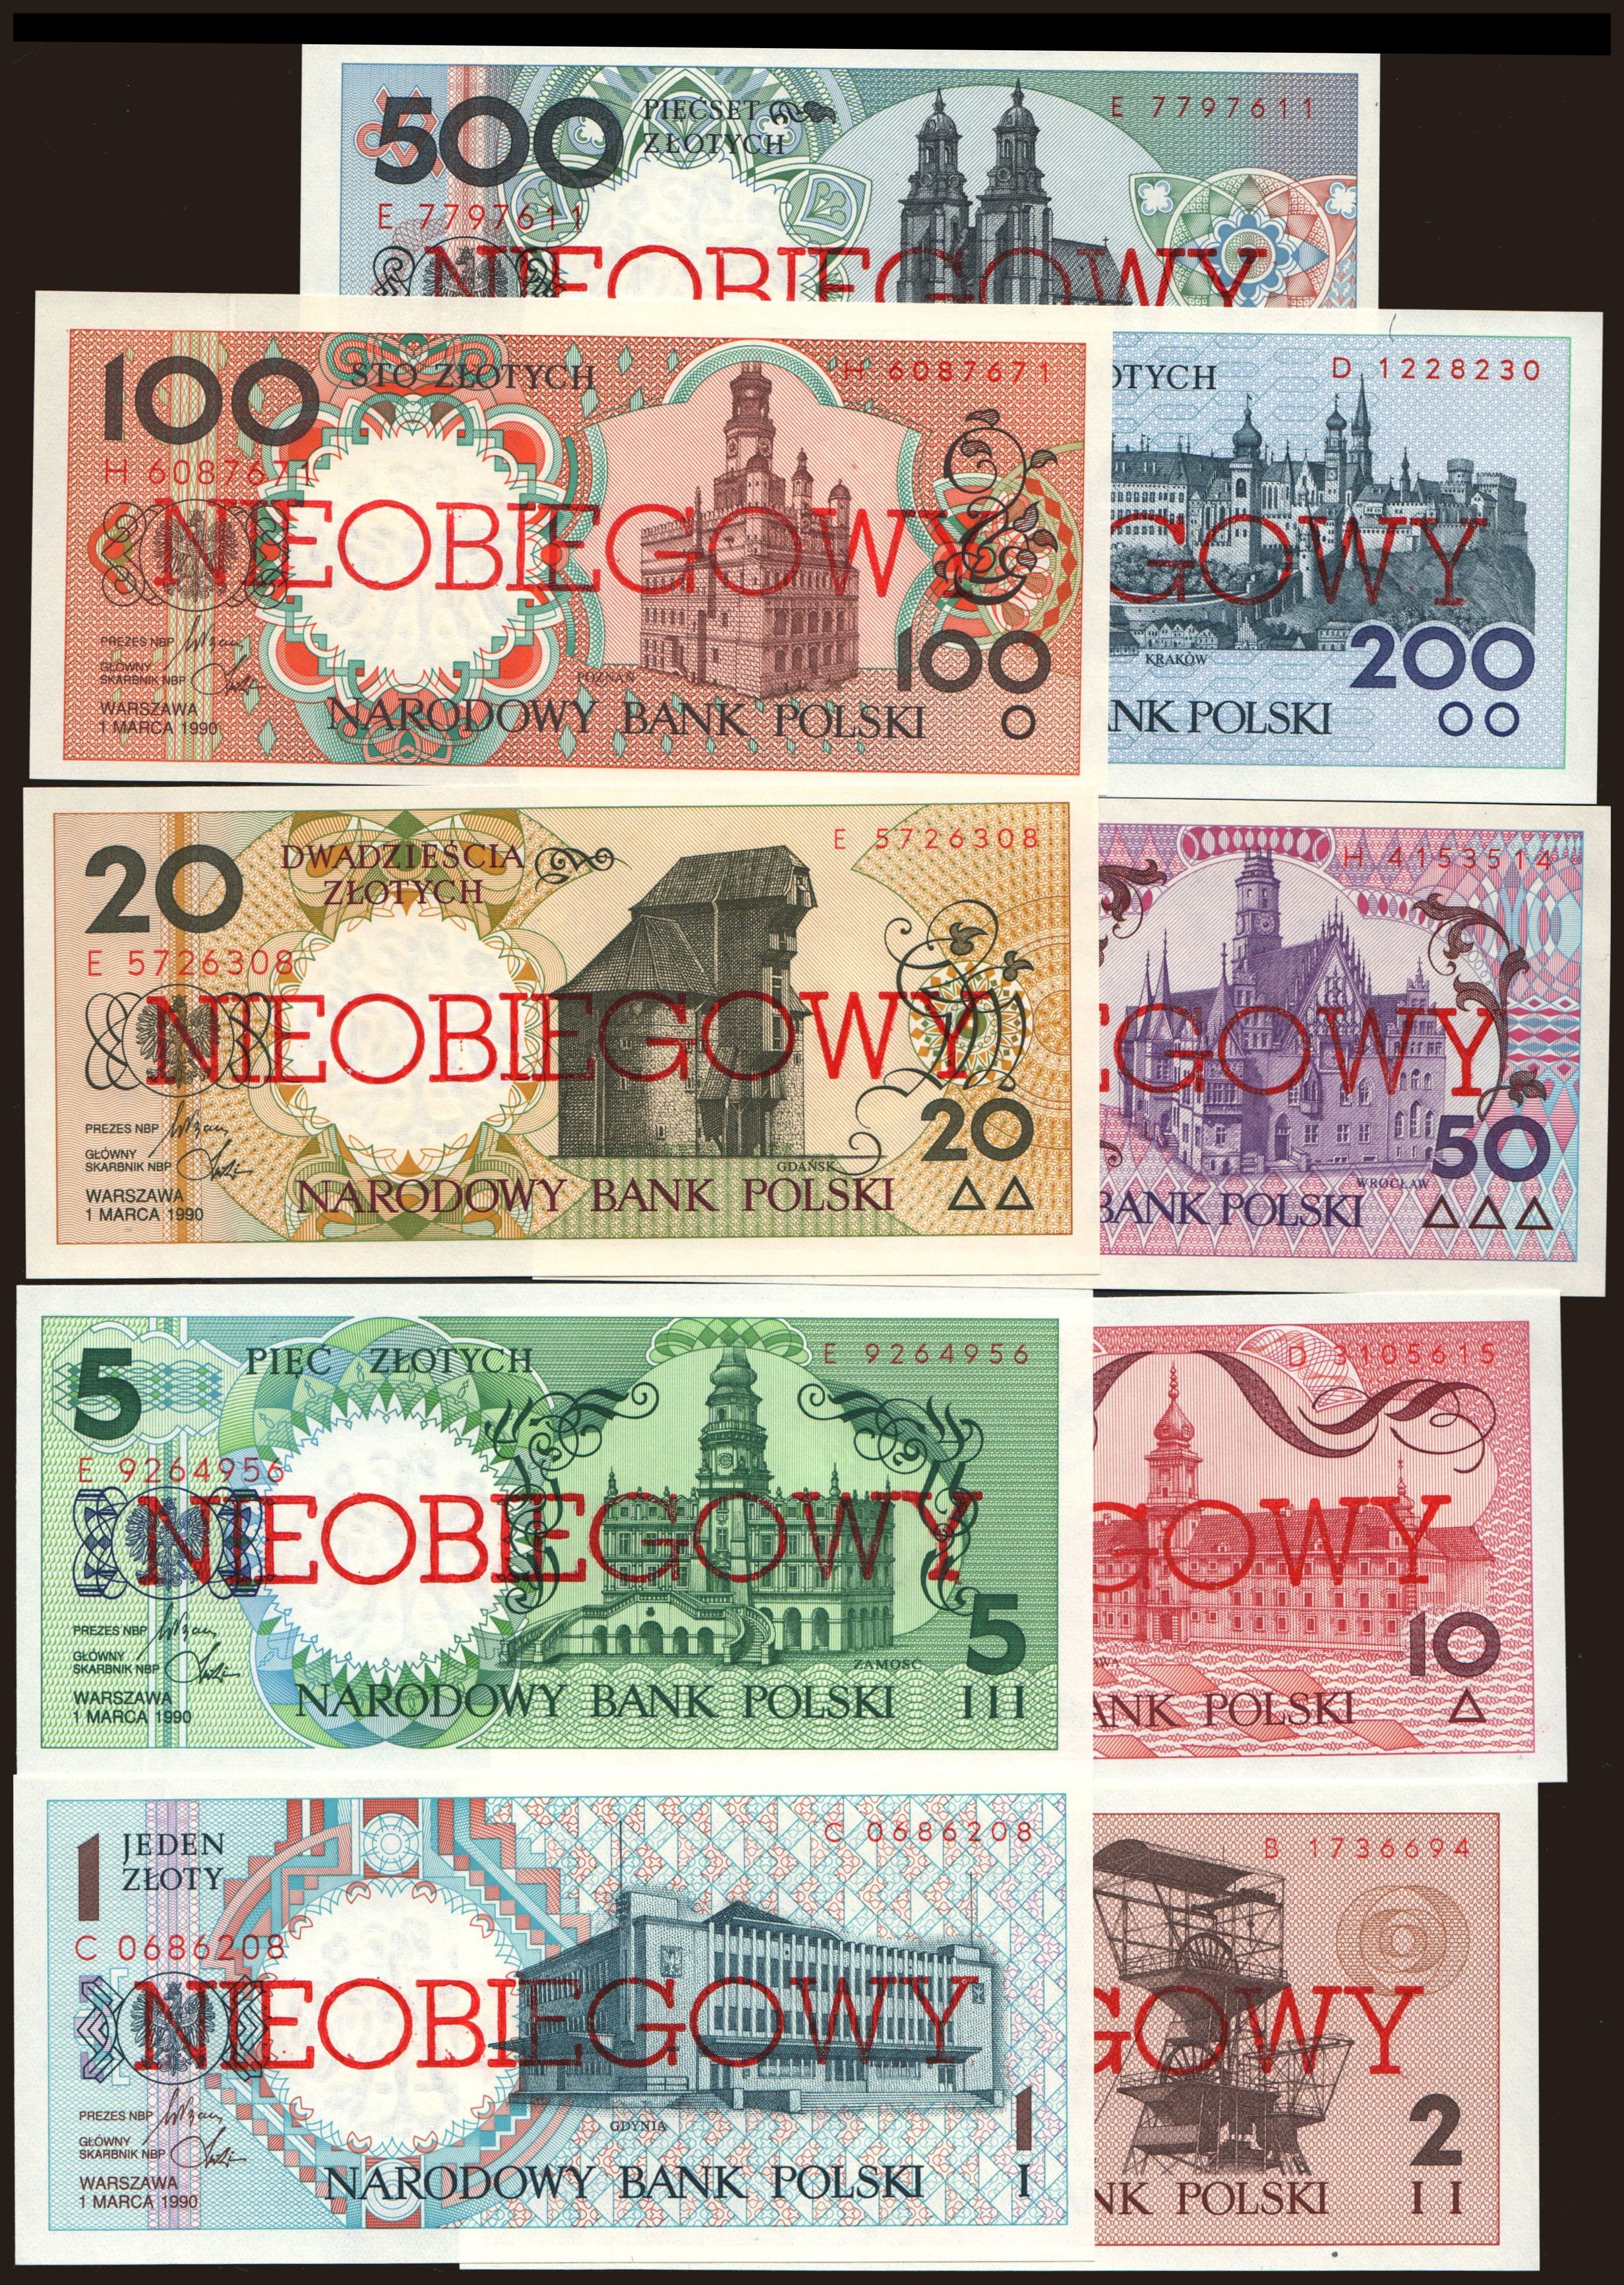 1 - 500 zlotych, 1990